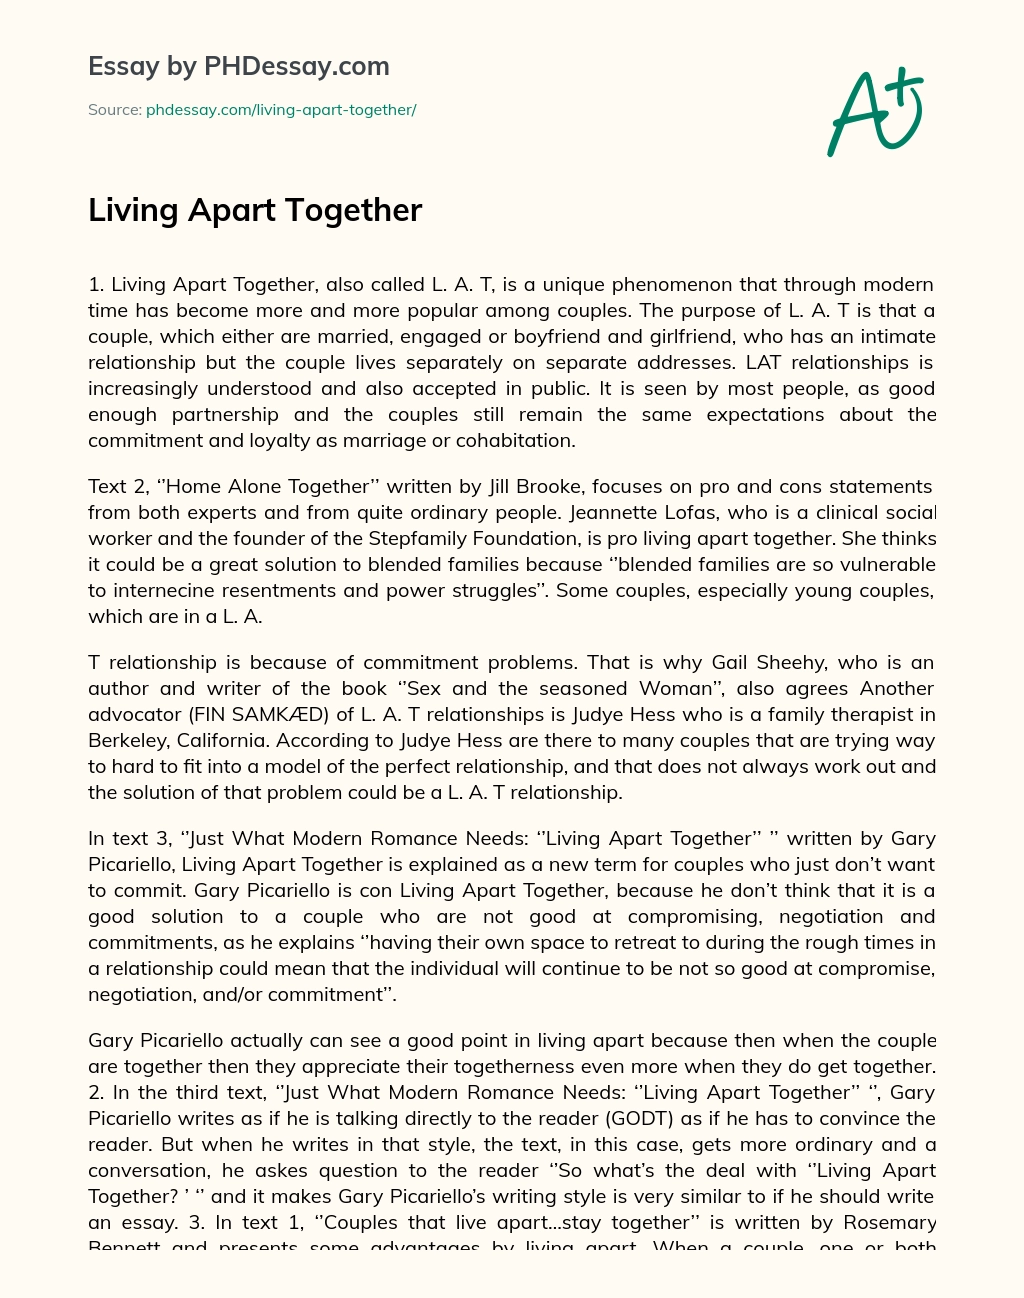 Living Apart Together essay